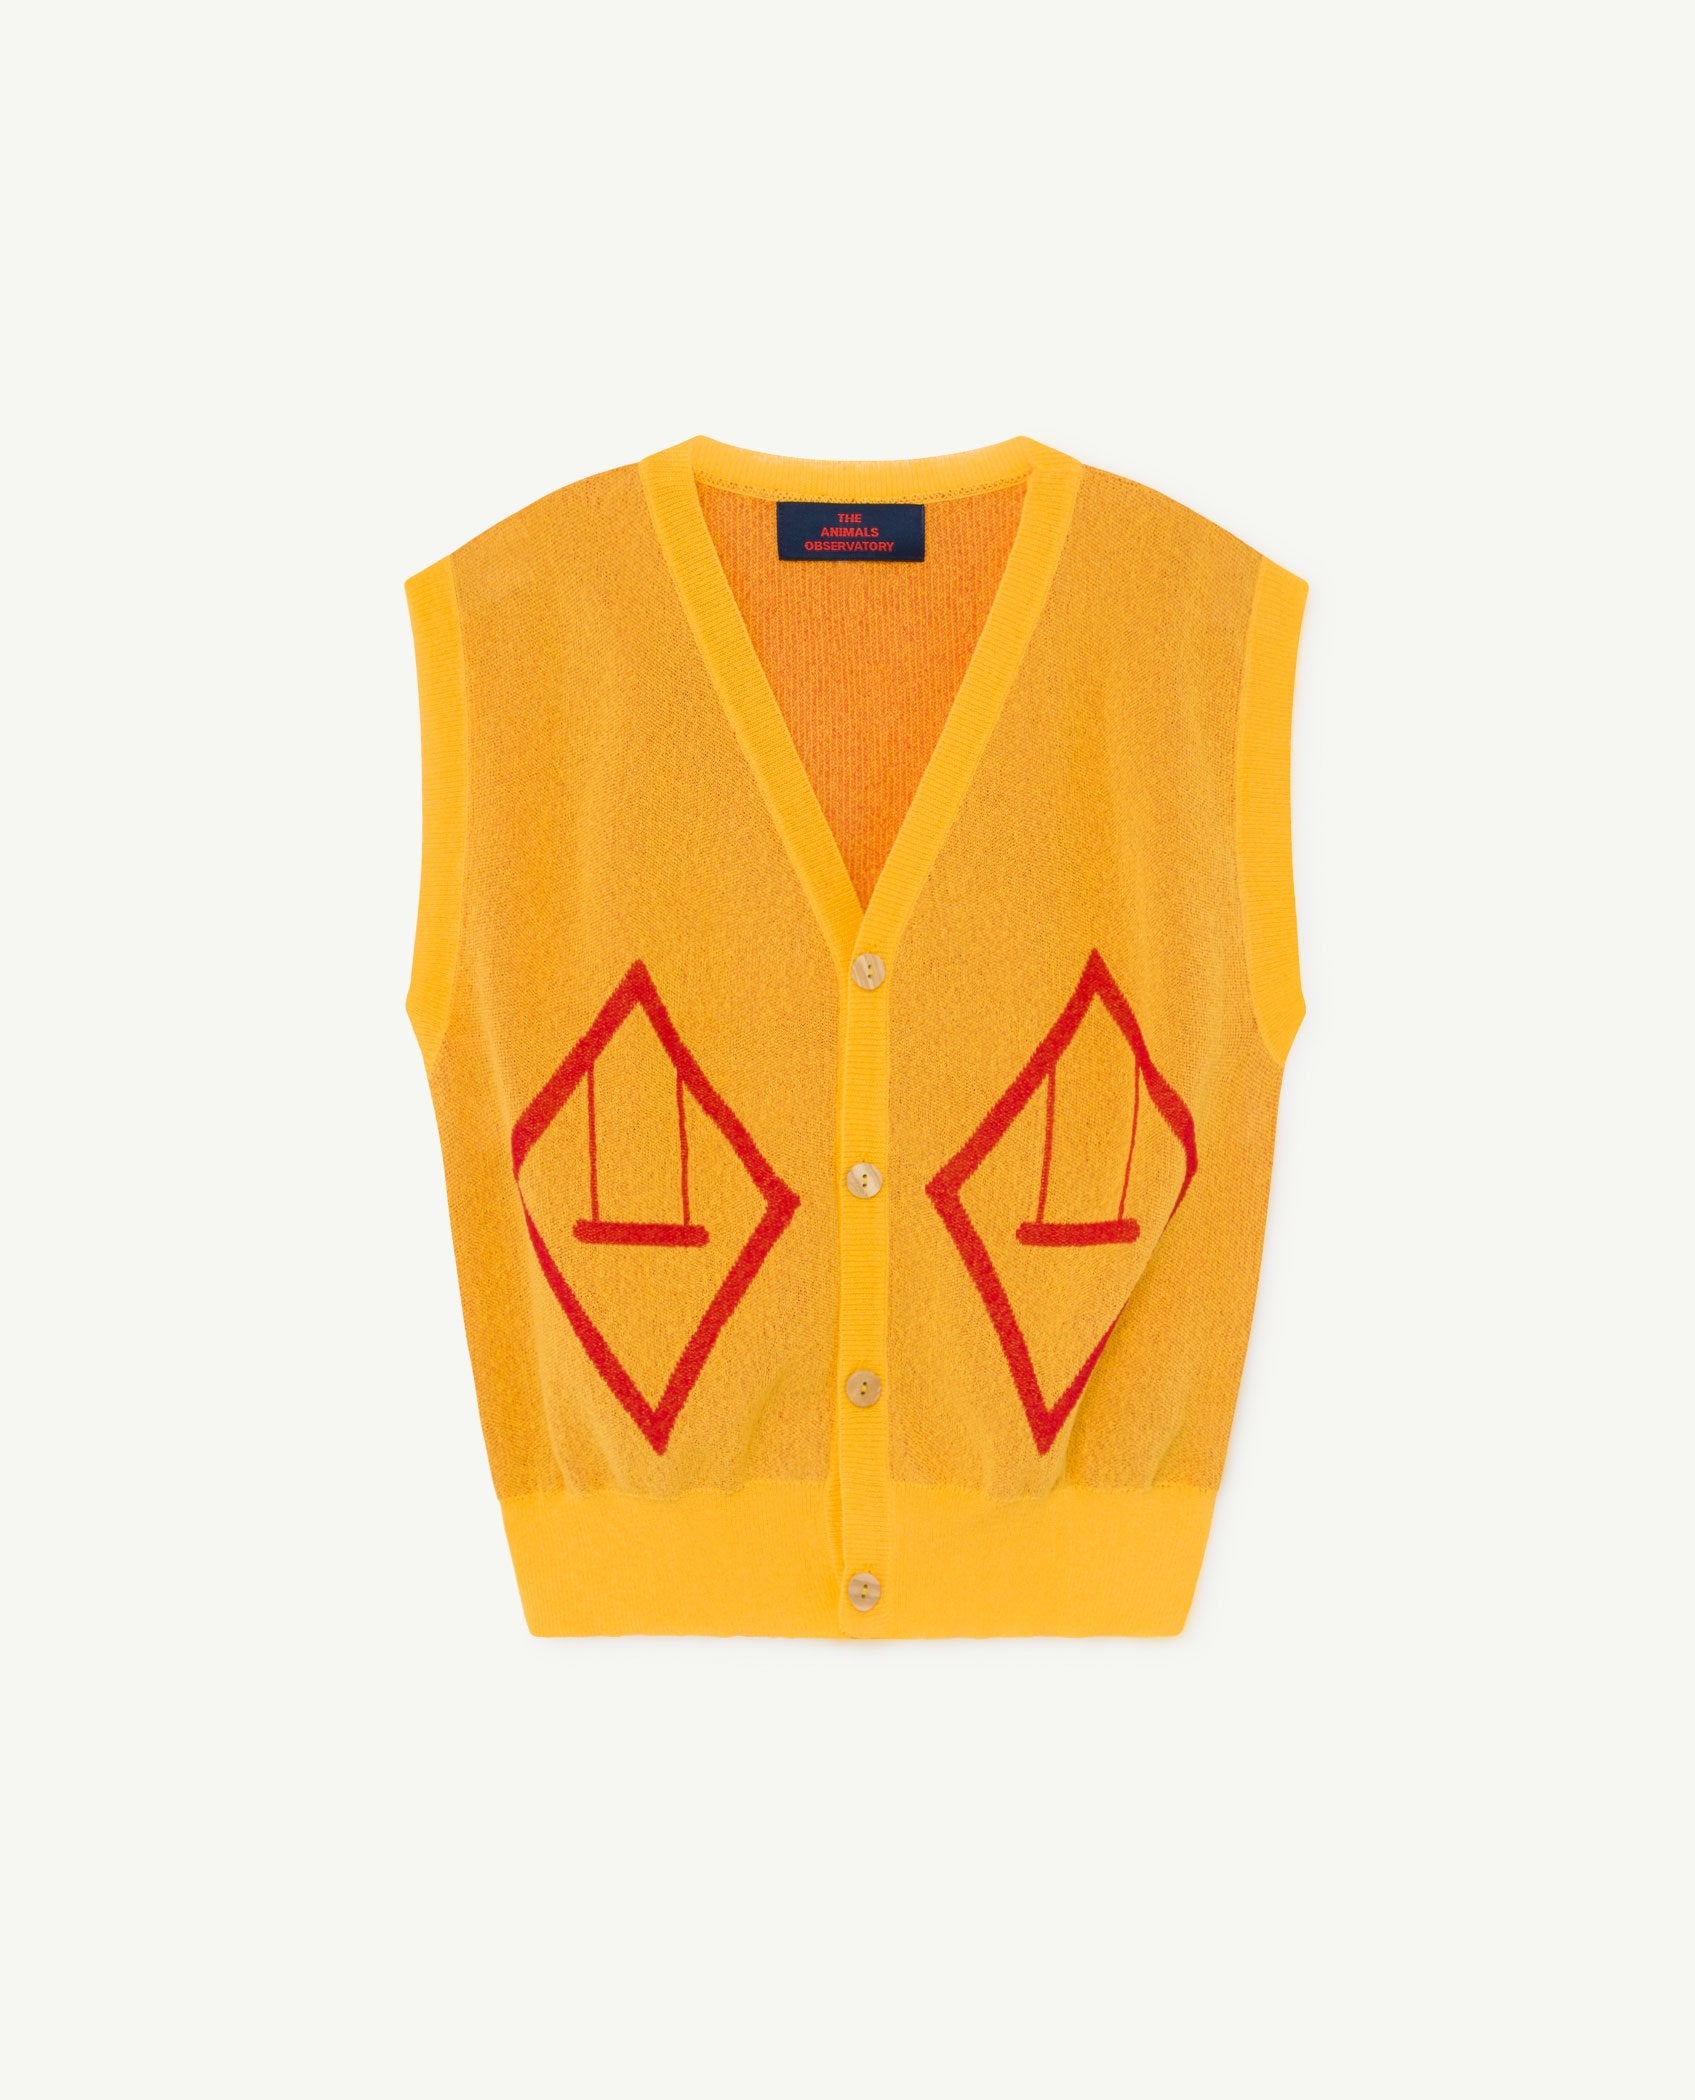 Yellow Bat Vest PRODUCT FRONT